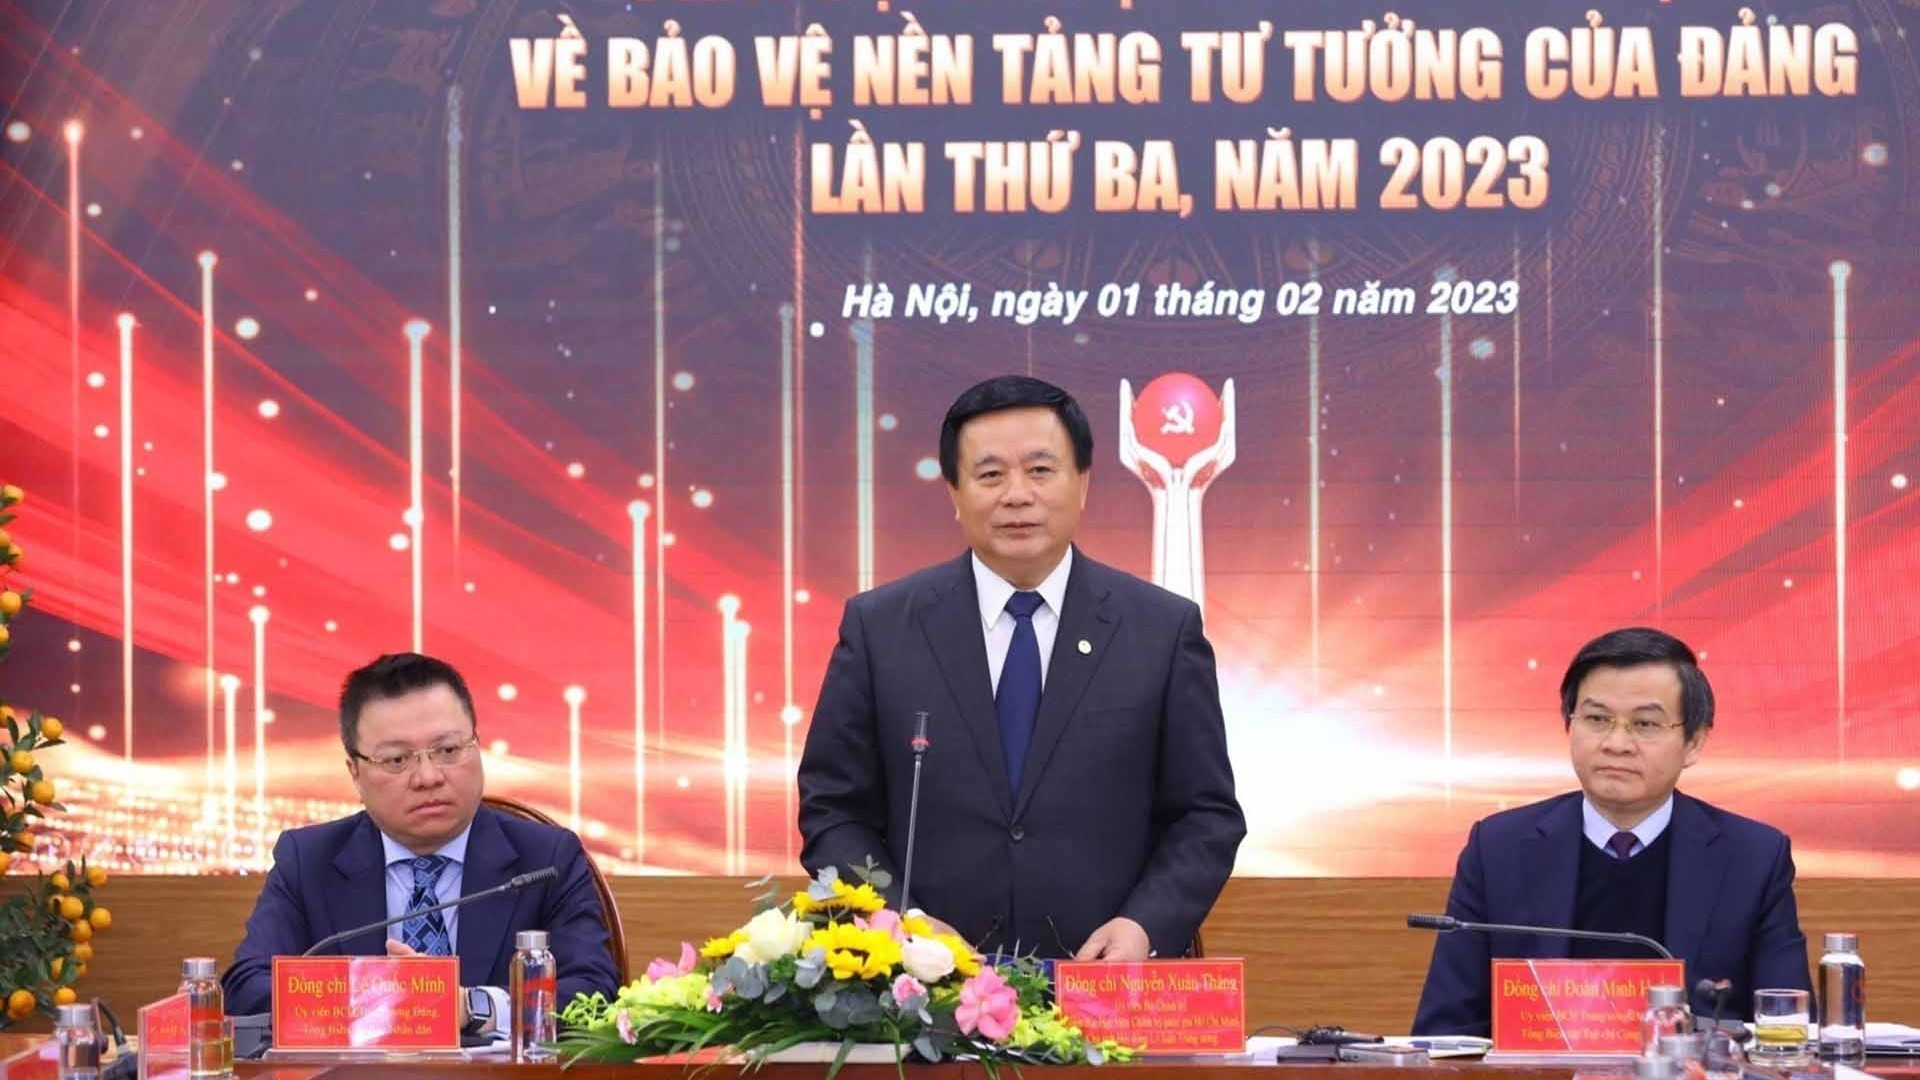 Phát động cuộc thi chính luận về bảo vệ nền tảng tư tưởng của Đảng lần thứ Ba, năm 2023